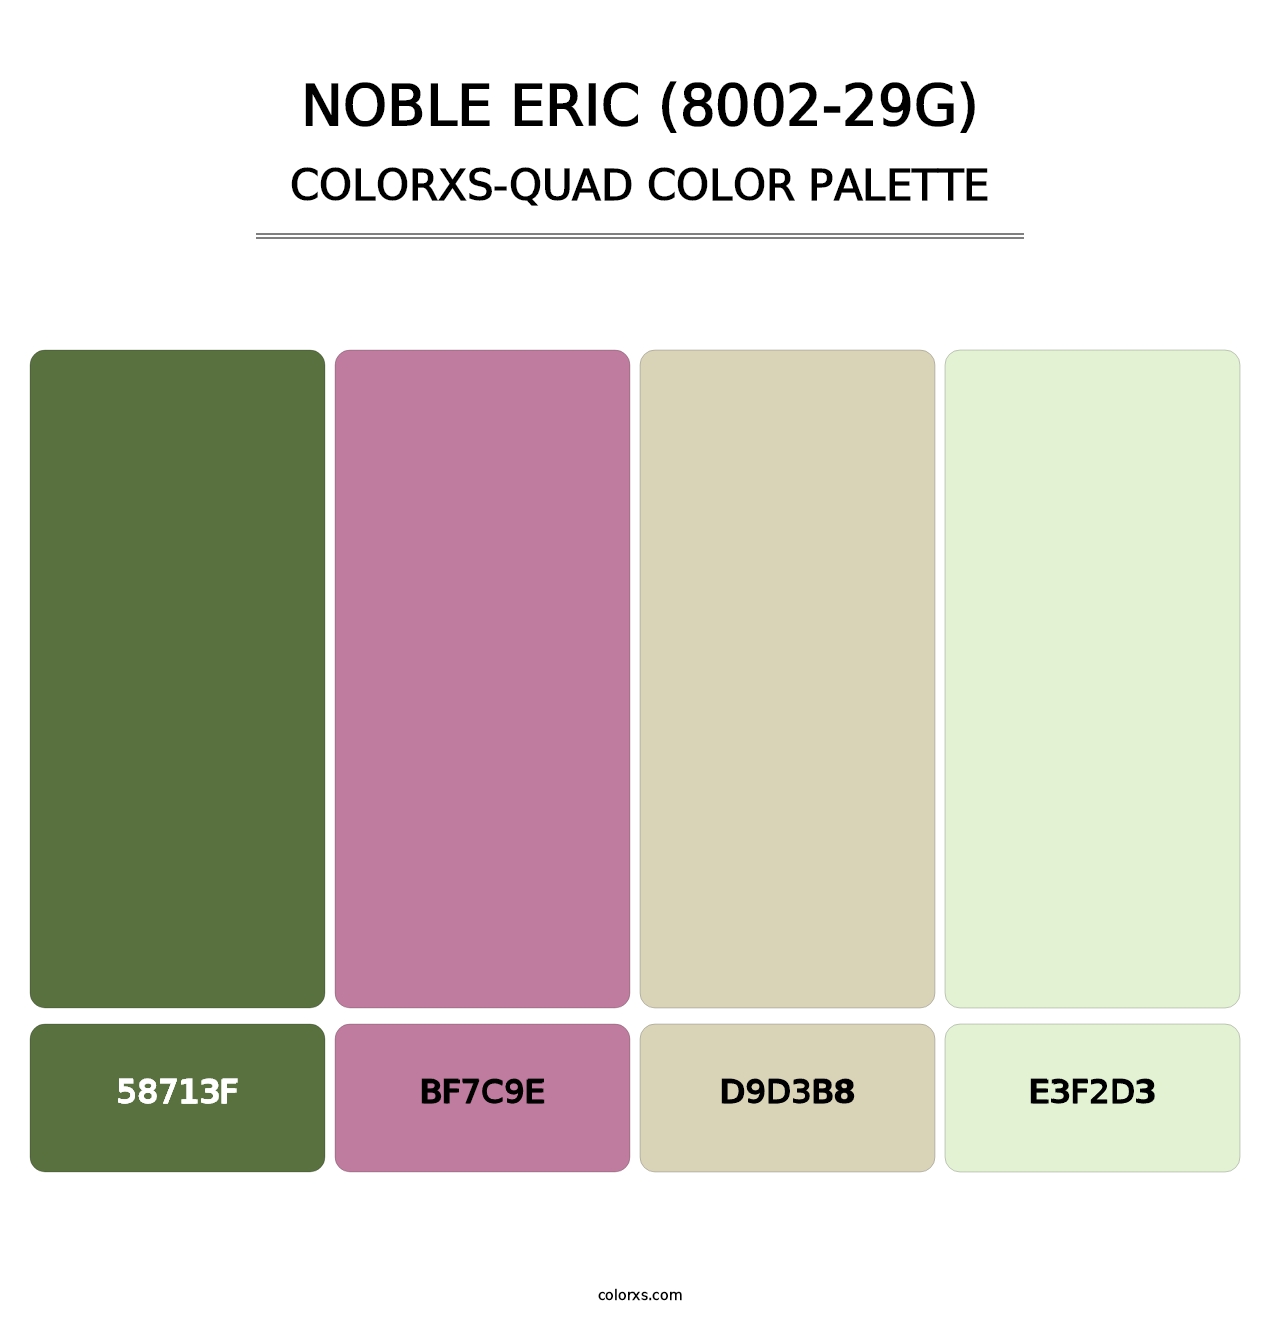 Noble Eric (8002-29G) - Colorxs Quad Palette